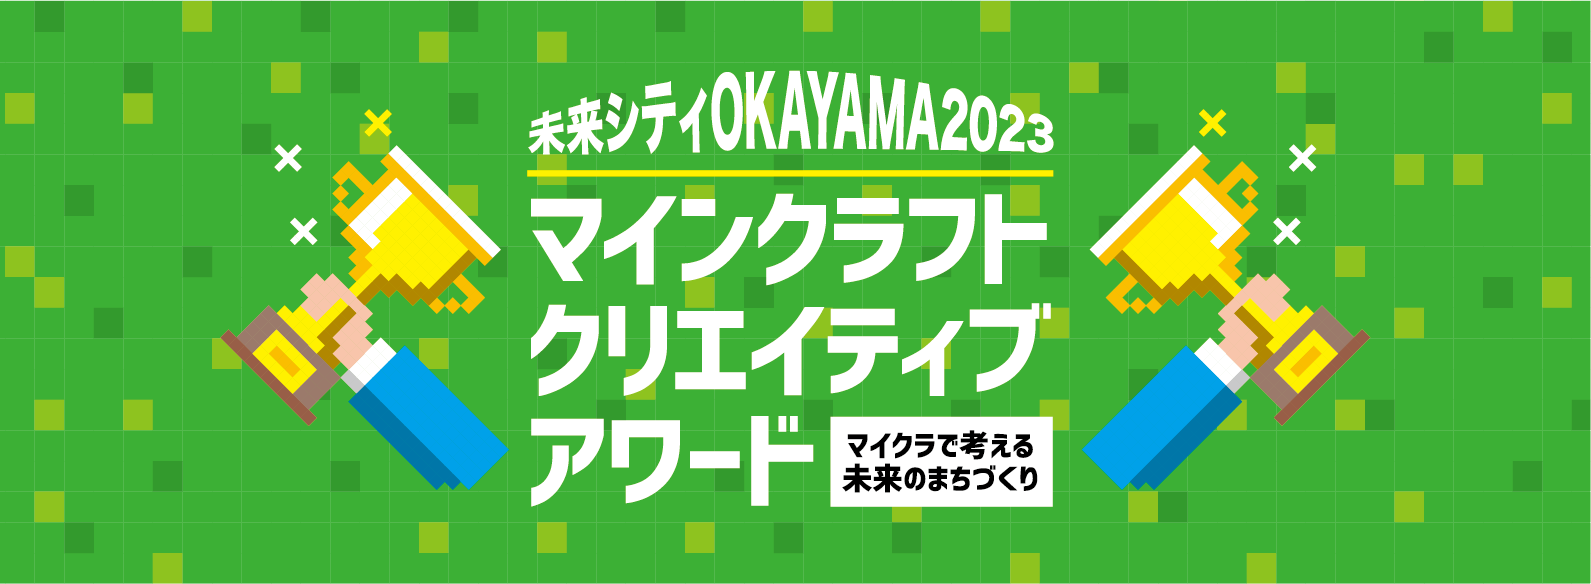 未来シティOKAYAMA2023 マインクラフトクリエイティブアワードのファーストビュー